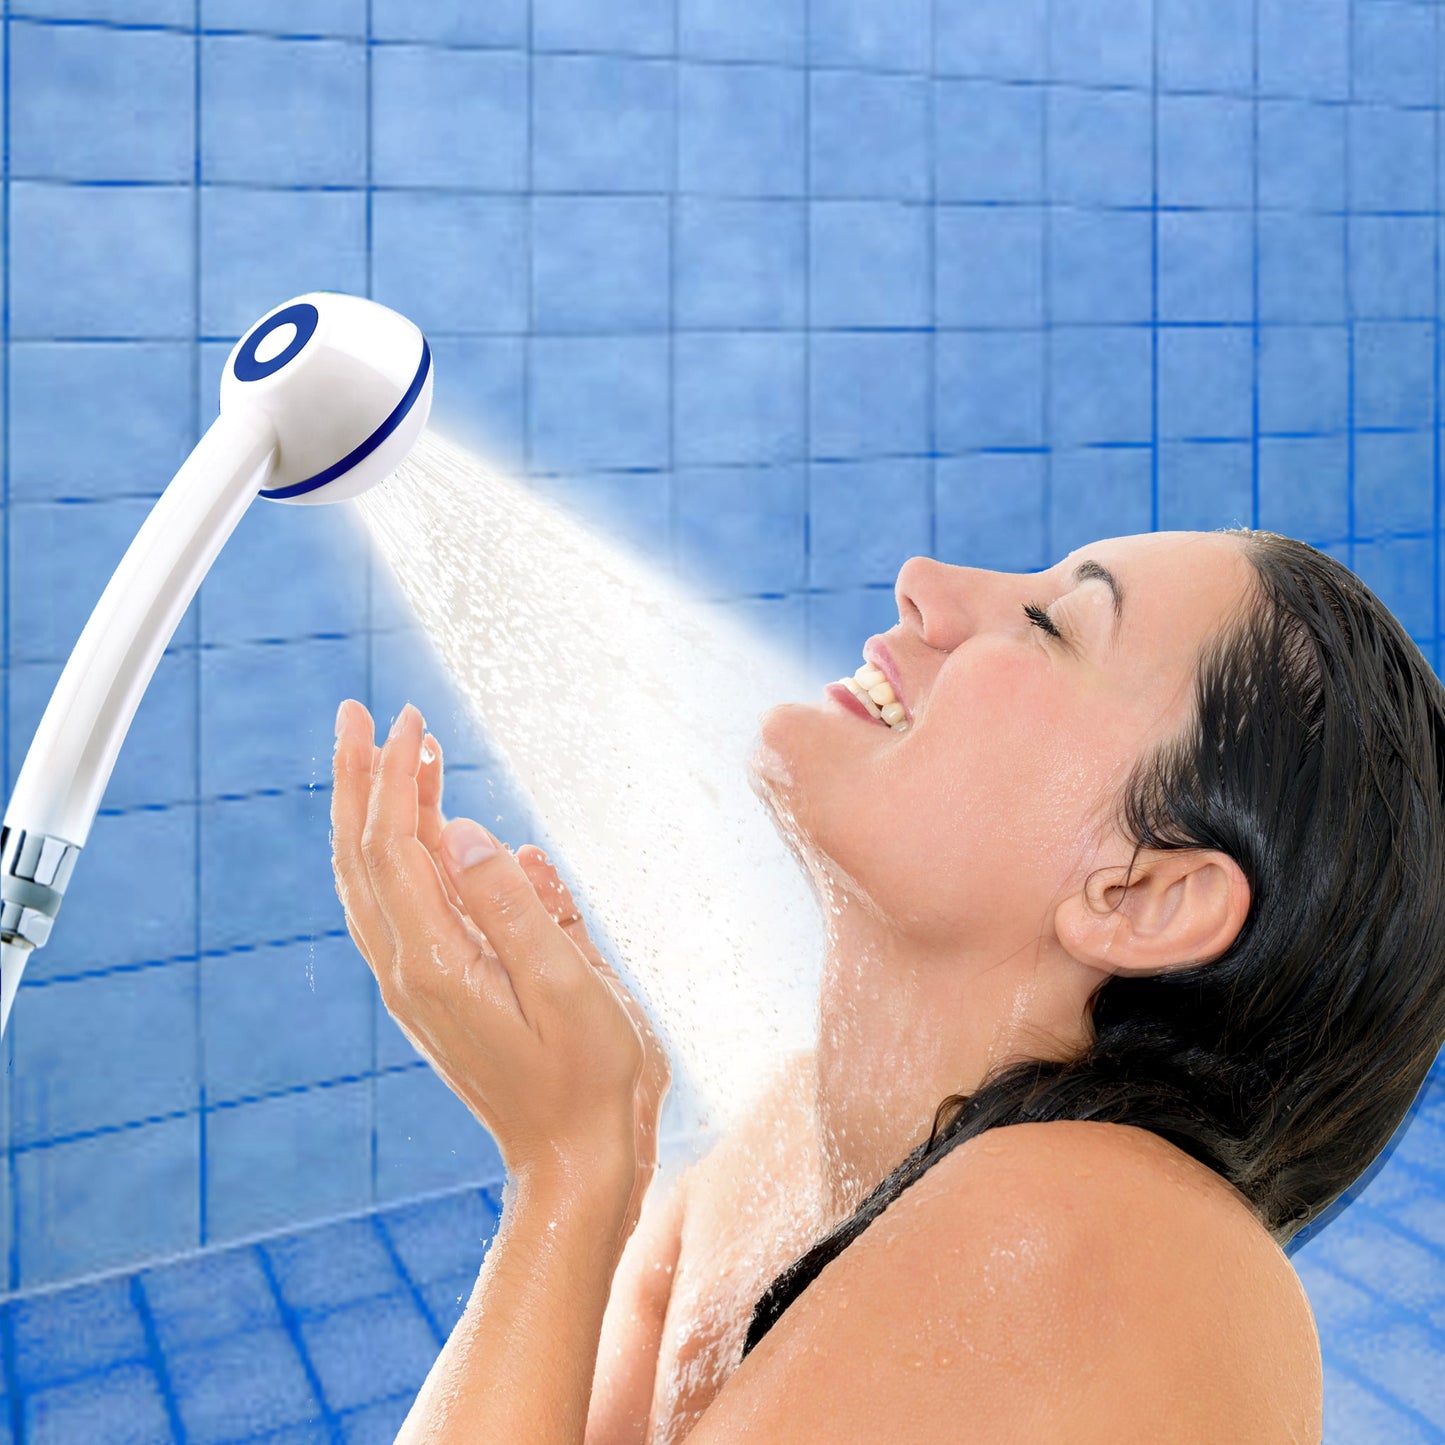 Jeune fille de profil, cheveux bruns, prend une douche avec pommeau de douche SwissClima sans métal, blanc, dans douche avec carreaux bleus